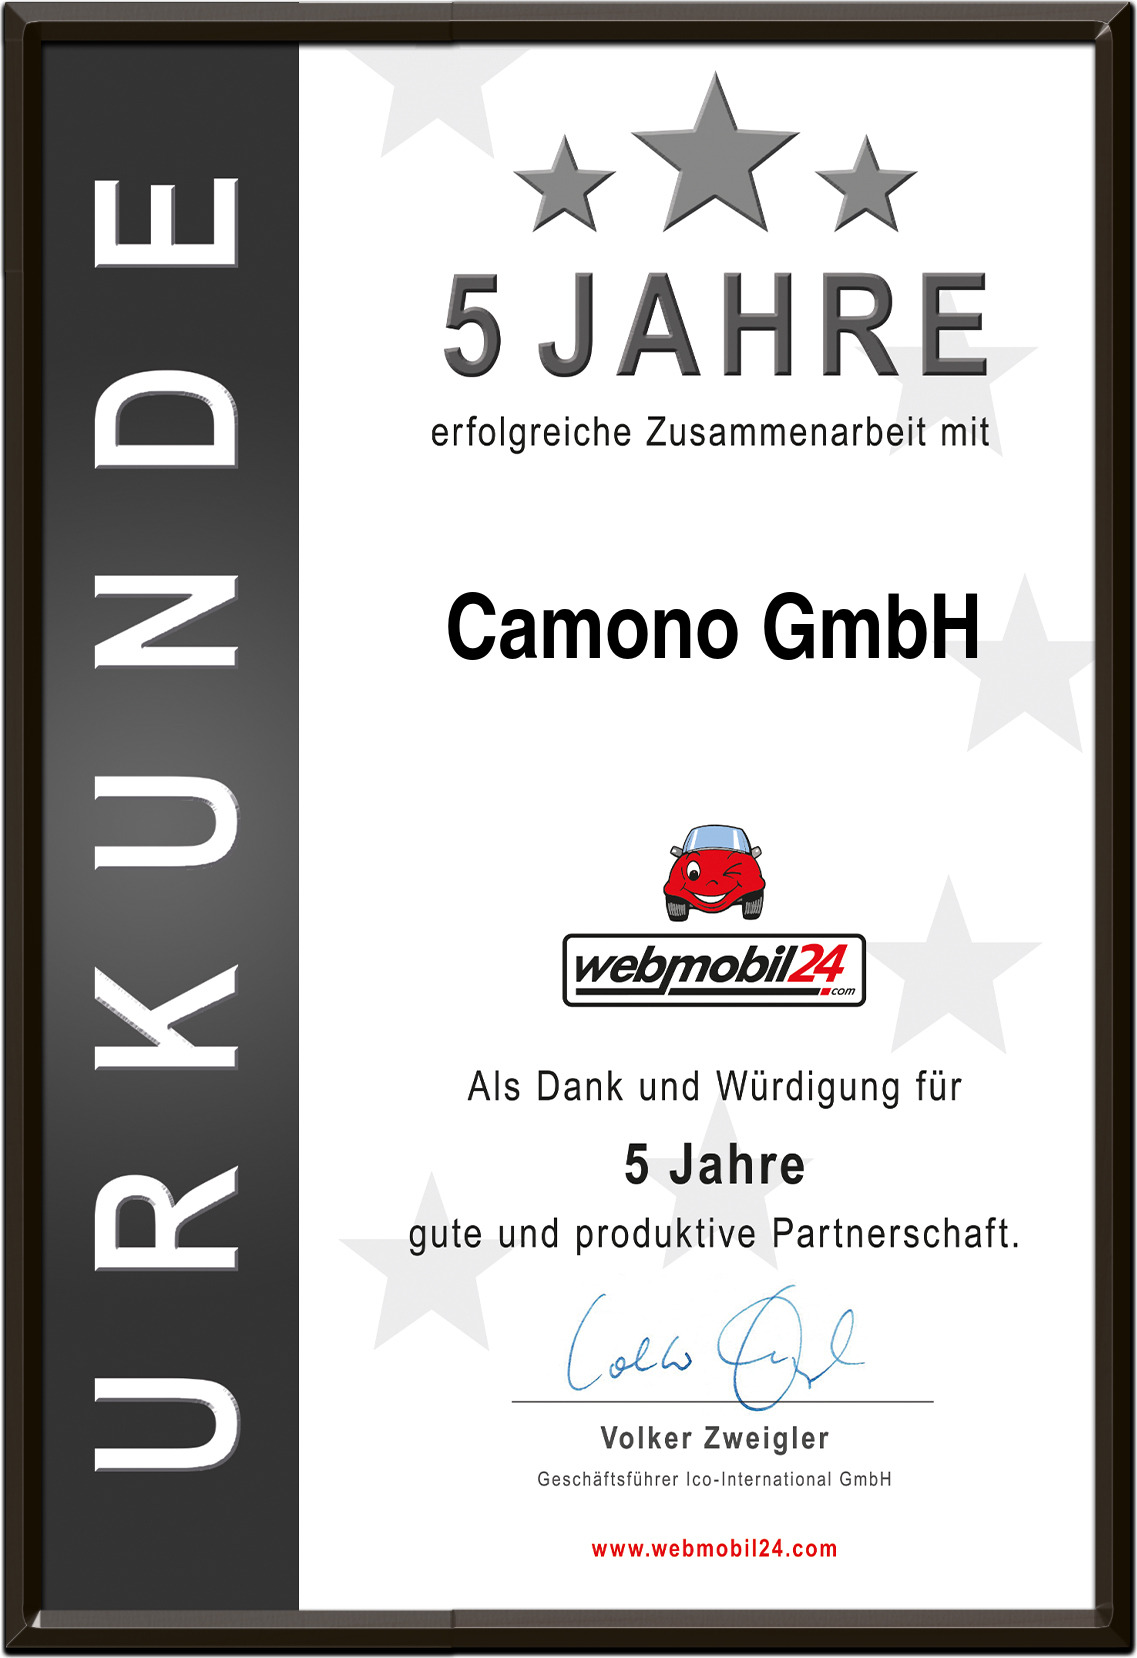 Camono GmbH